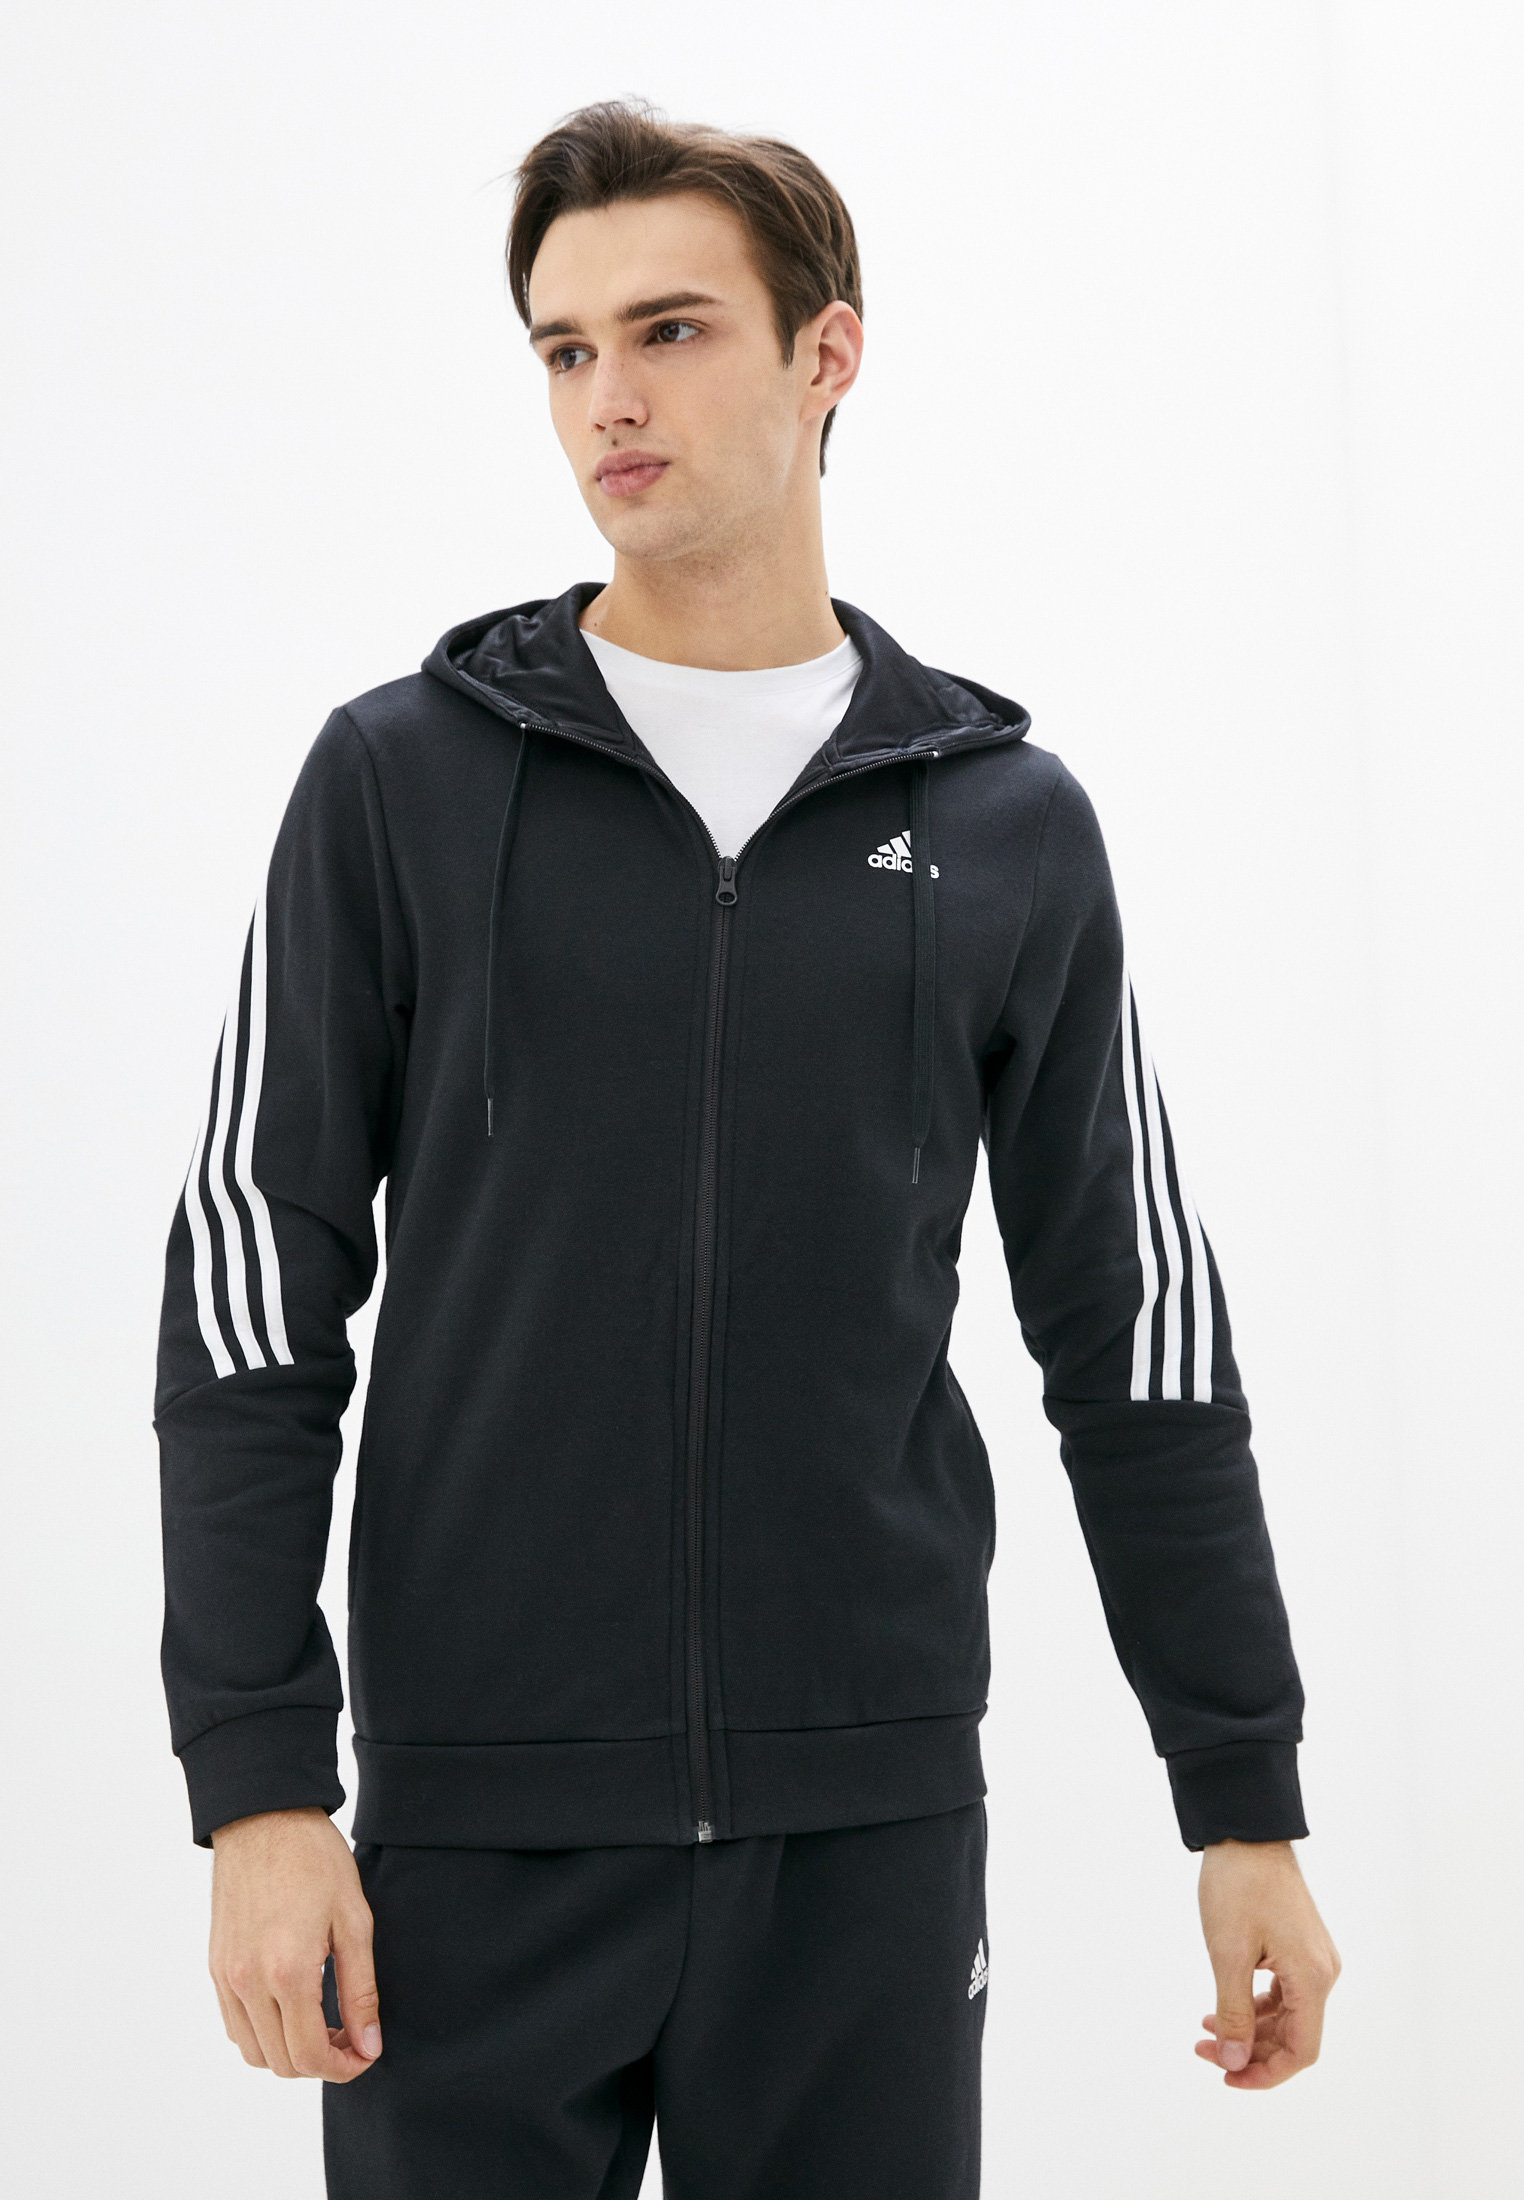 Спортивный костюм мужской Adidas (Адидас) H42021 купить за 8699 руб.